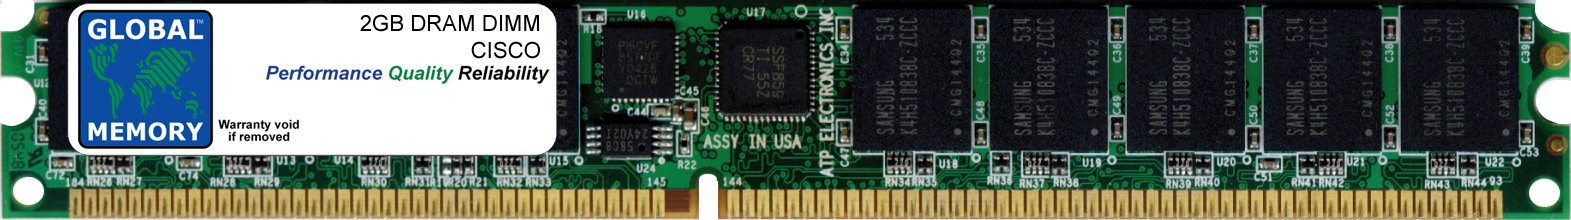 2GB DRAM DIMM MEMORY RAM FOR CISCO 3925 / 3945 ROUTERS (MEM-3900-2GB) - Click Image to Close